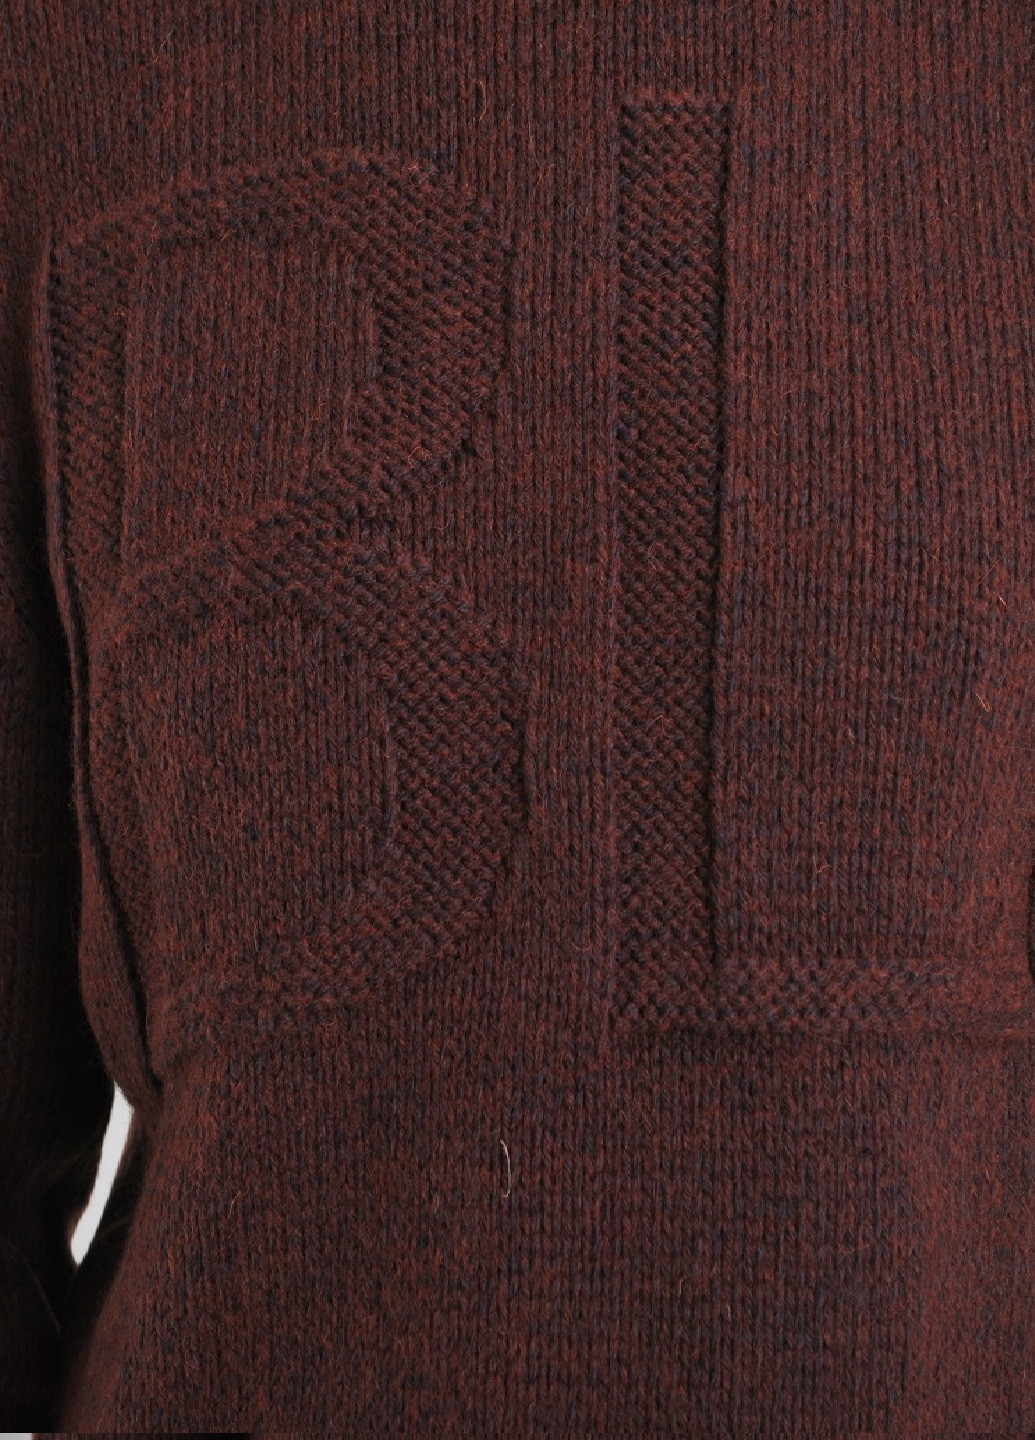 Темно-красный зимний свитер с буквами Berta Lucci